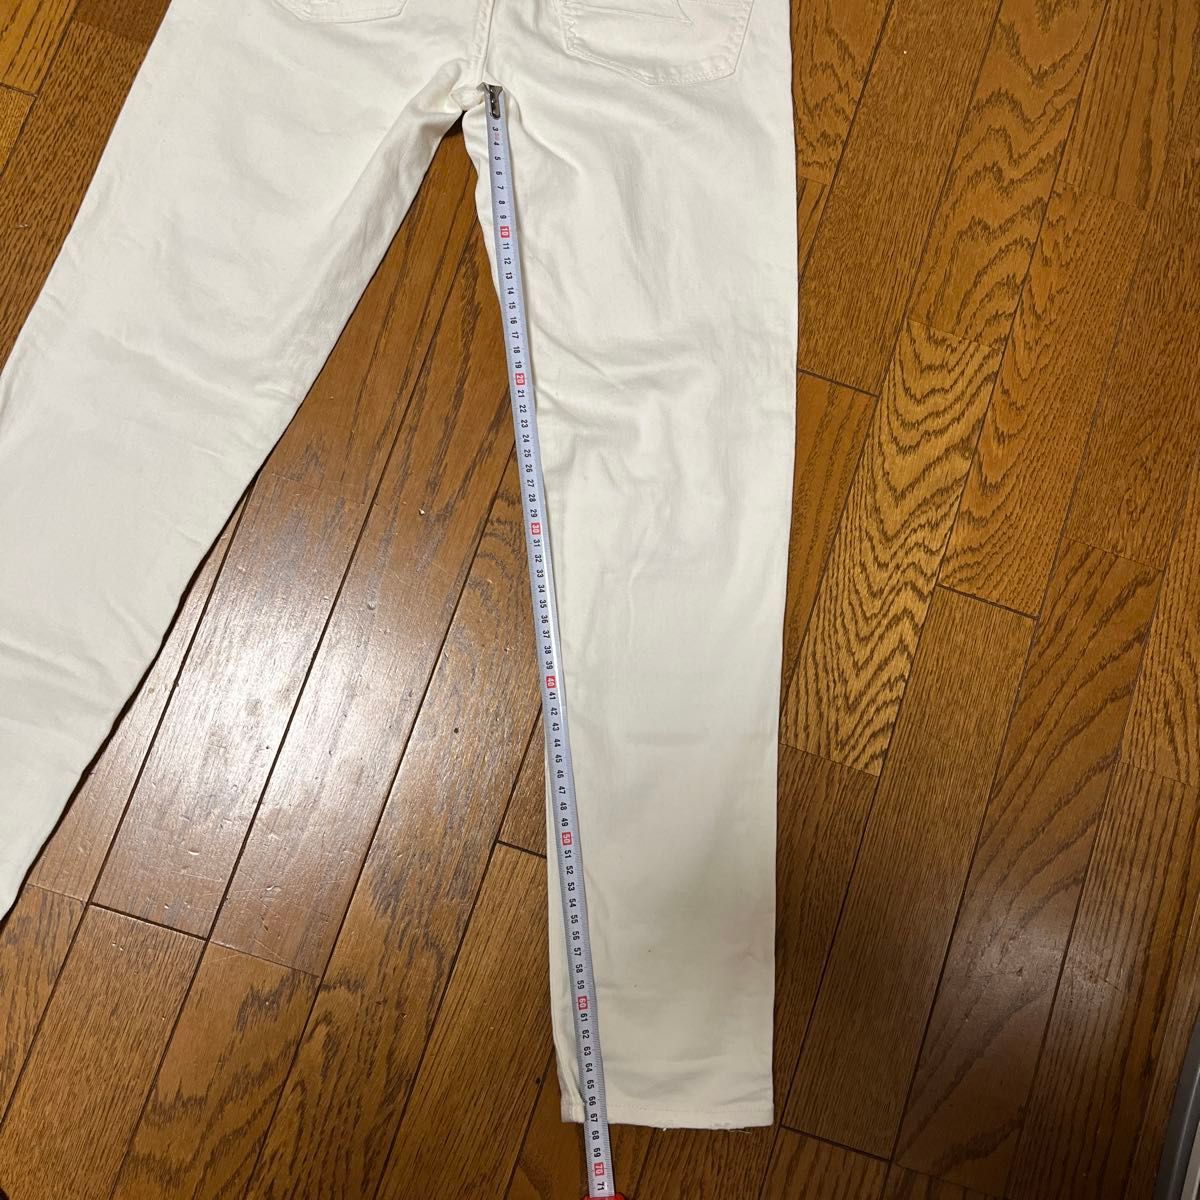 ダメージジーンズ ストレッチ スキニー パンツ ホワイトキッズ用ですが小型な人なら着れそうです。画像でサイズご確認下さい